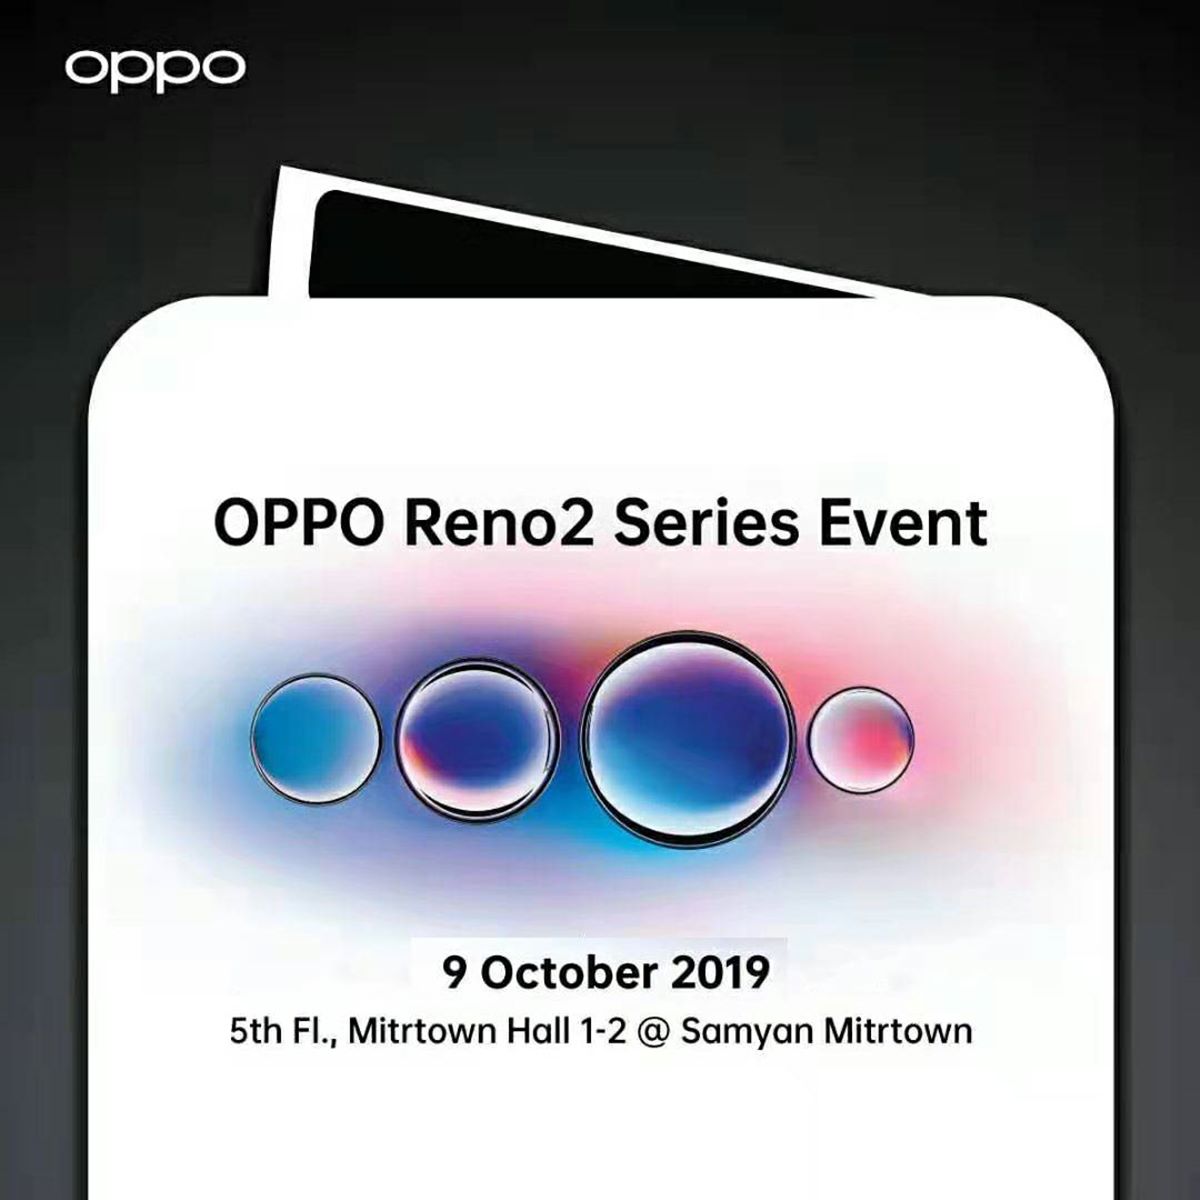 งานเปิดตัวสุดยอดสมาร์ทโฟนรุ่นใหม่ OPPO Reno2 Series